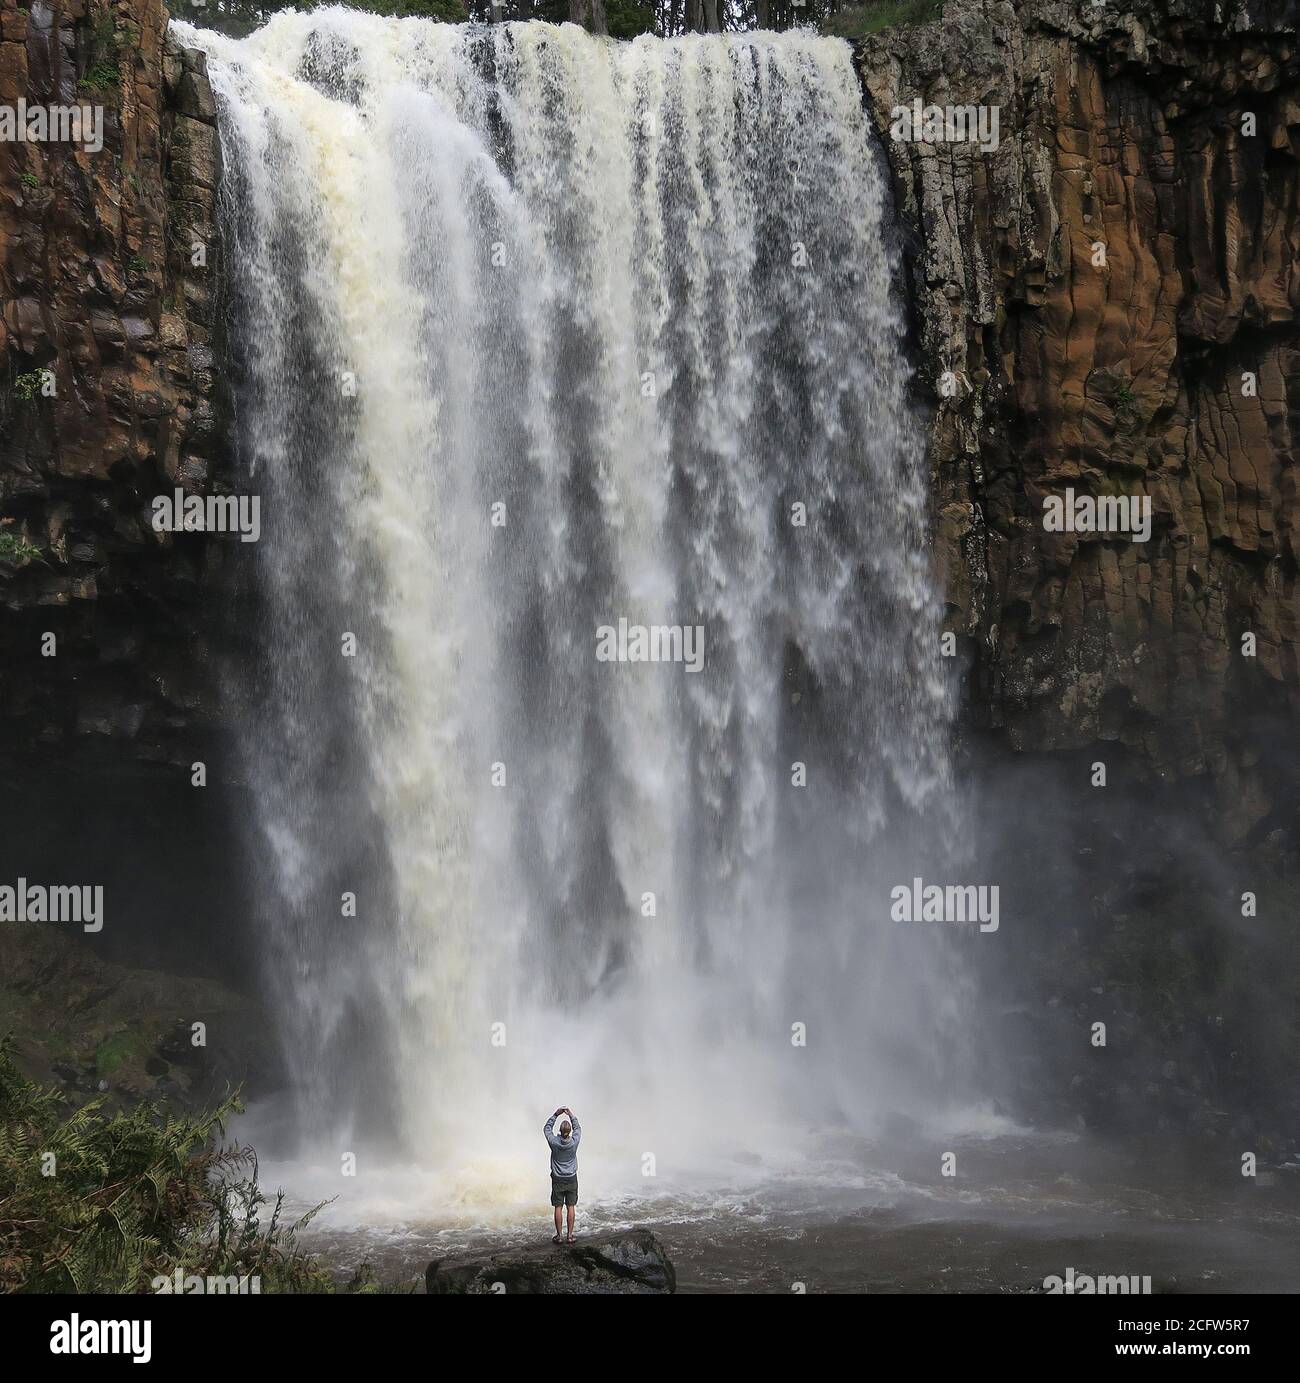 Melbourne Australie. Scènes de la vie quotidienne à Melbourne Australie . Un touriste prend des photos aux chutes d'eau de Trentham. Banque D'Images